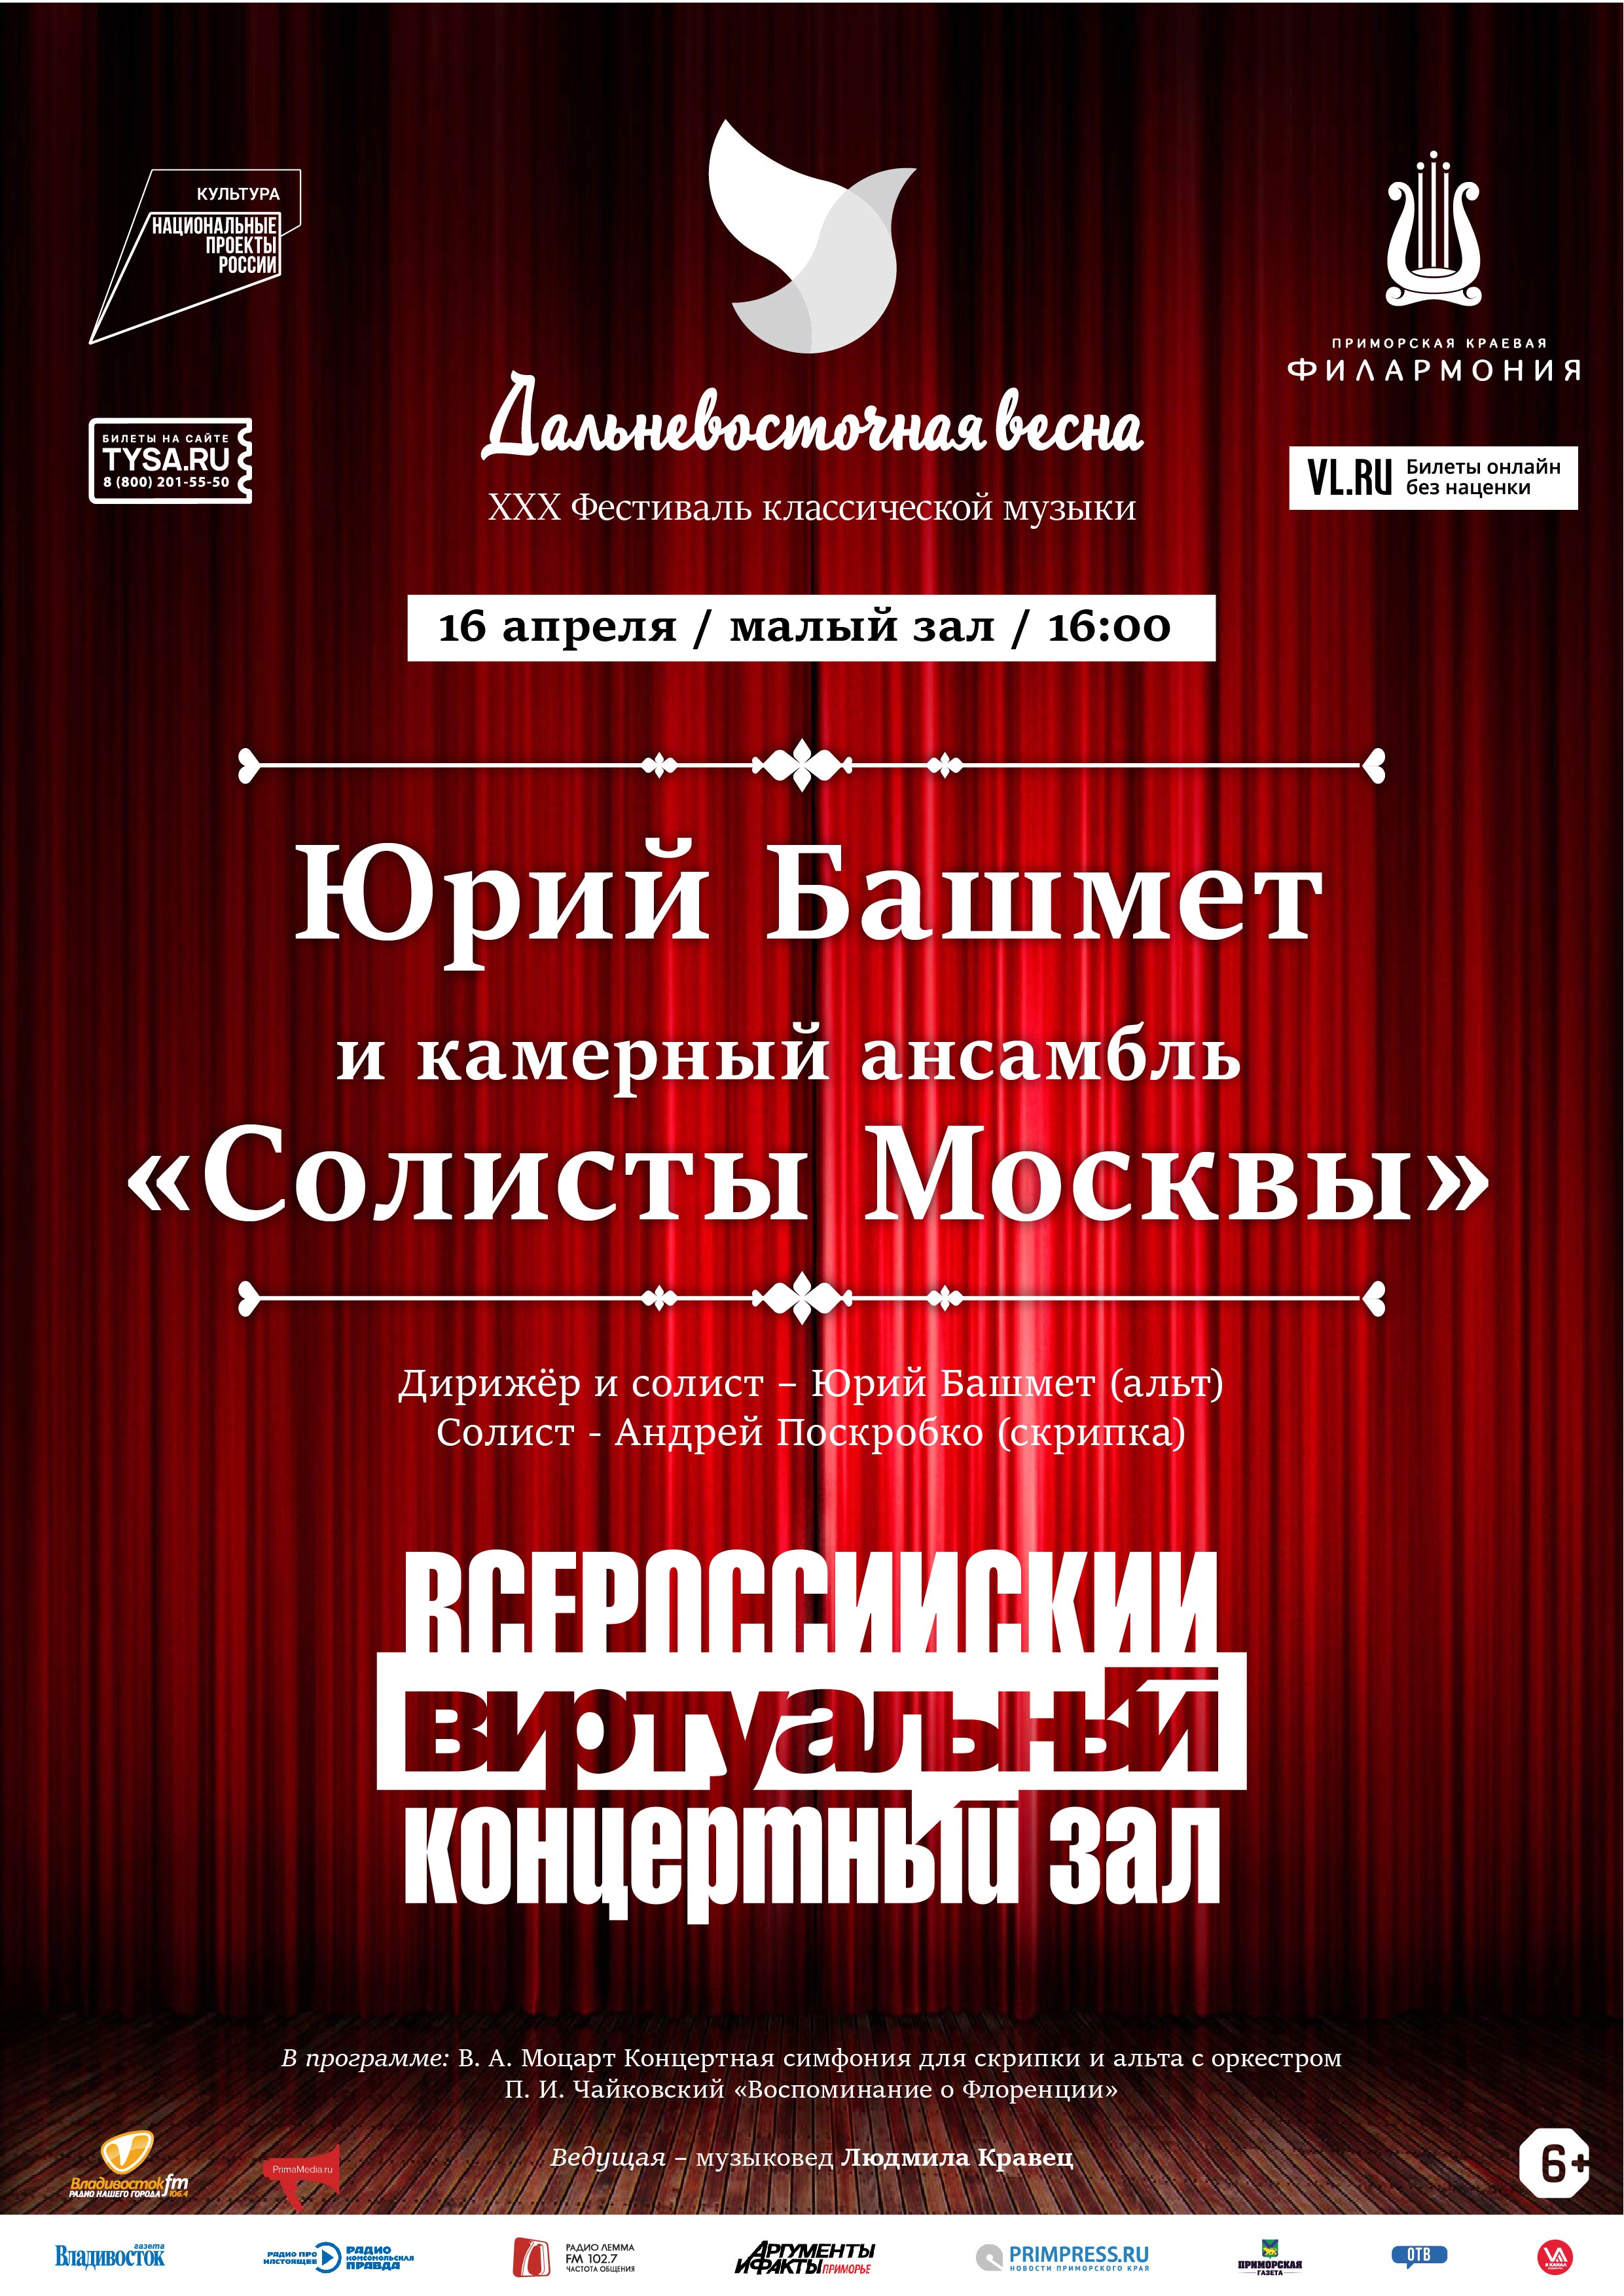 16 апреля Виртуальный Концертный Зал. Юрий Башмет и Камерный ансамбль «Солисты Москвы»